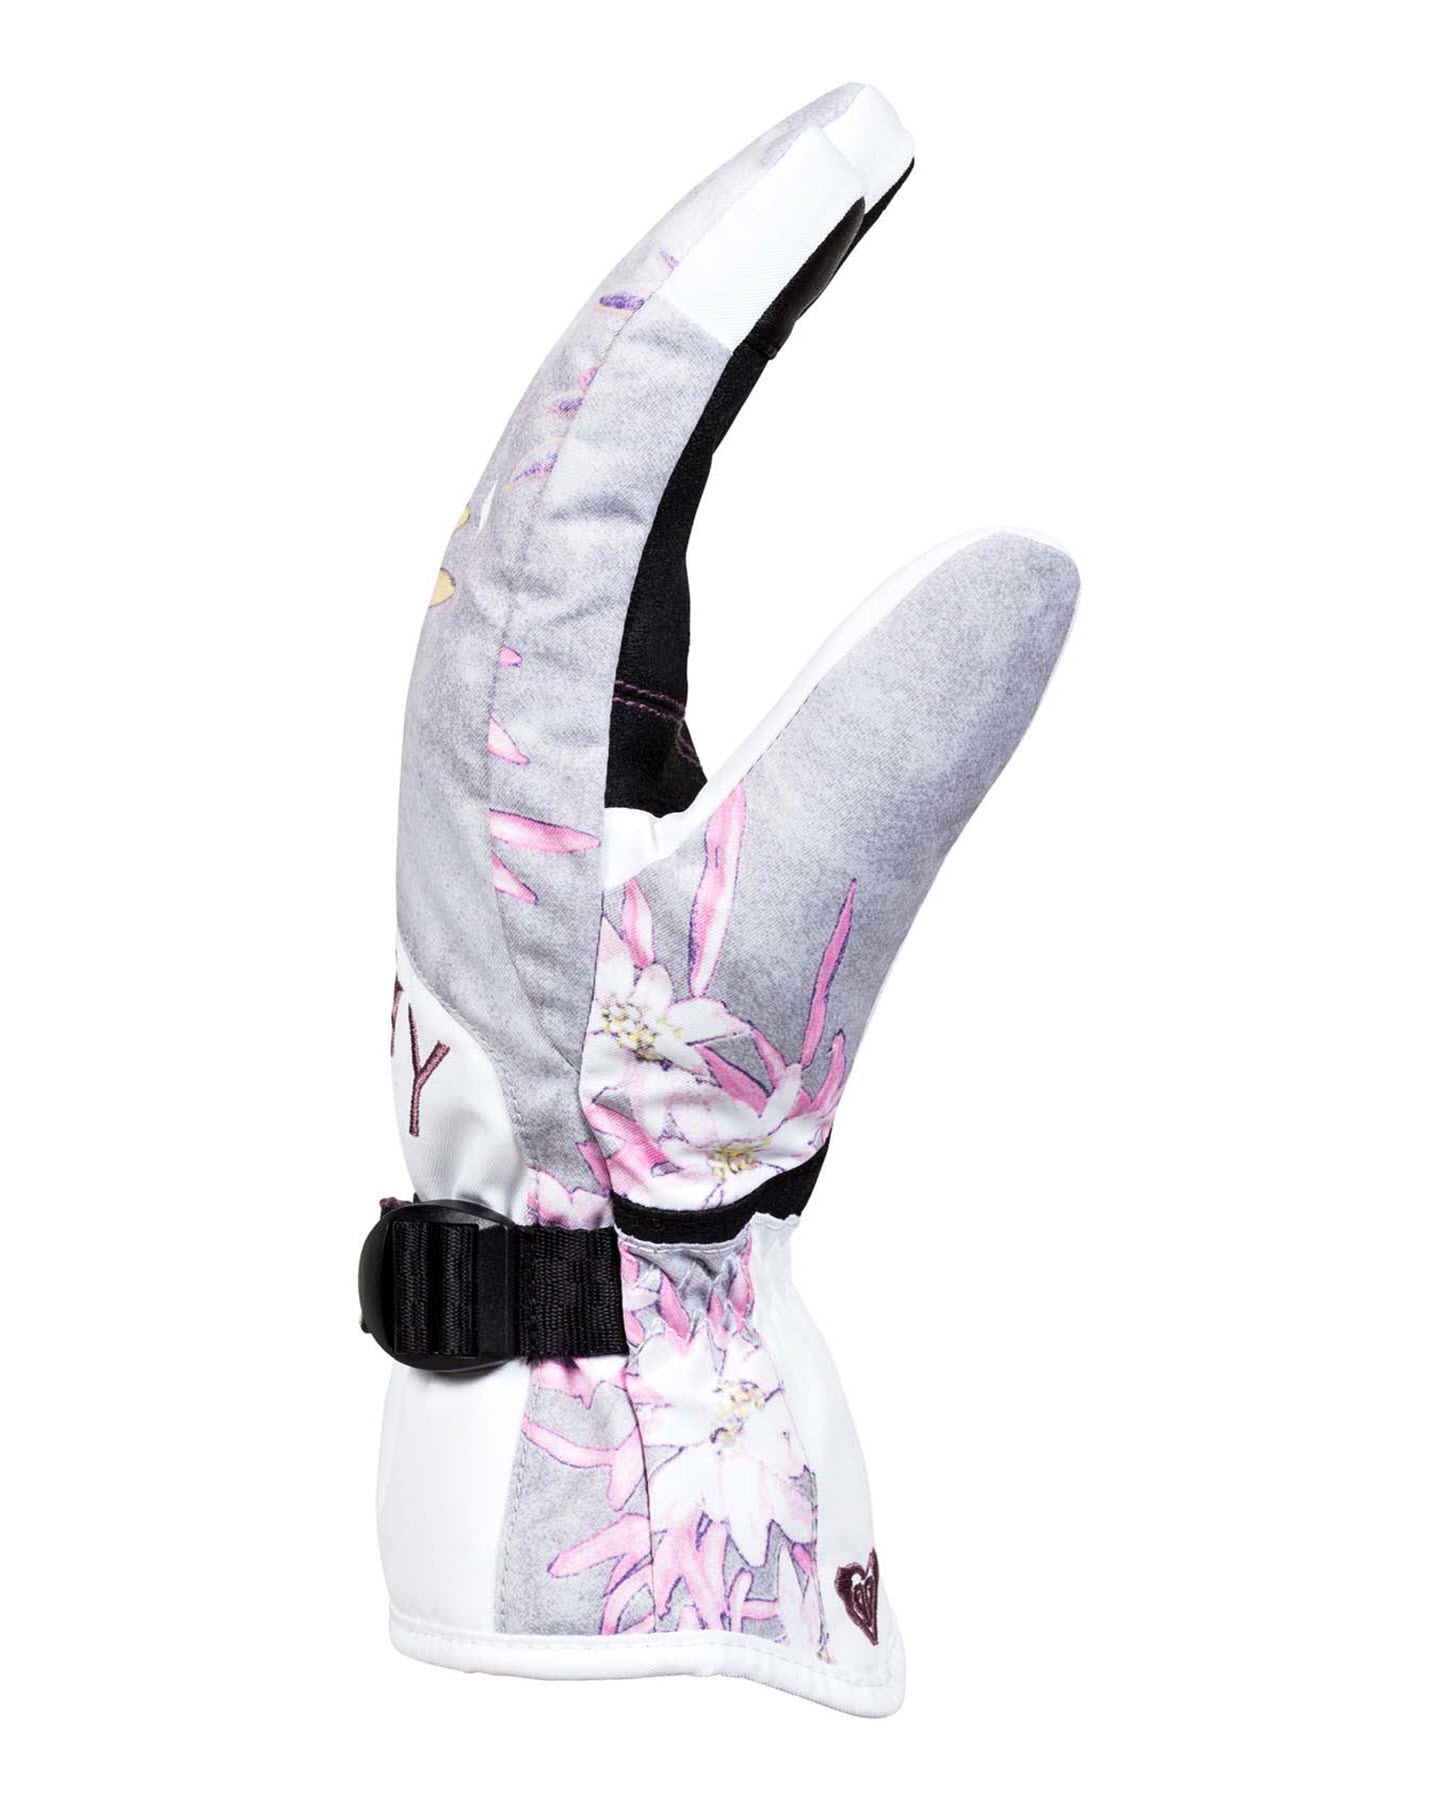 Розовые перчатки сноубордические roxy. Сноубордические перчатки Roxy Jetty. Roxy перчатки сноубордические женские. Перчатки сноубордические женские Roxy popi Gloves Blue Radiance. Roxy перчатки сноубордические белые.